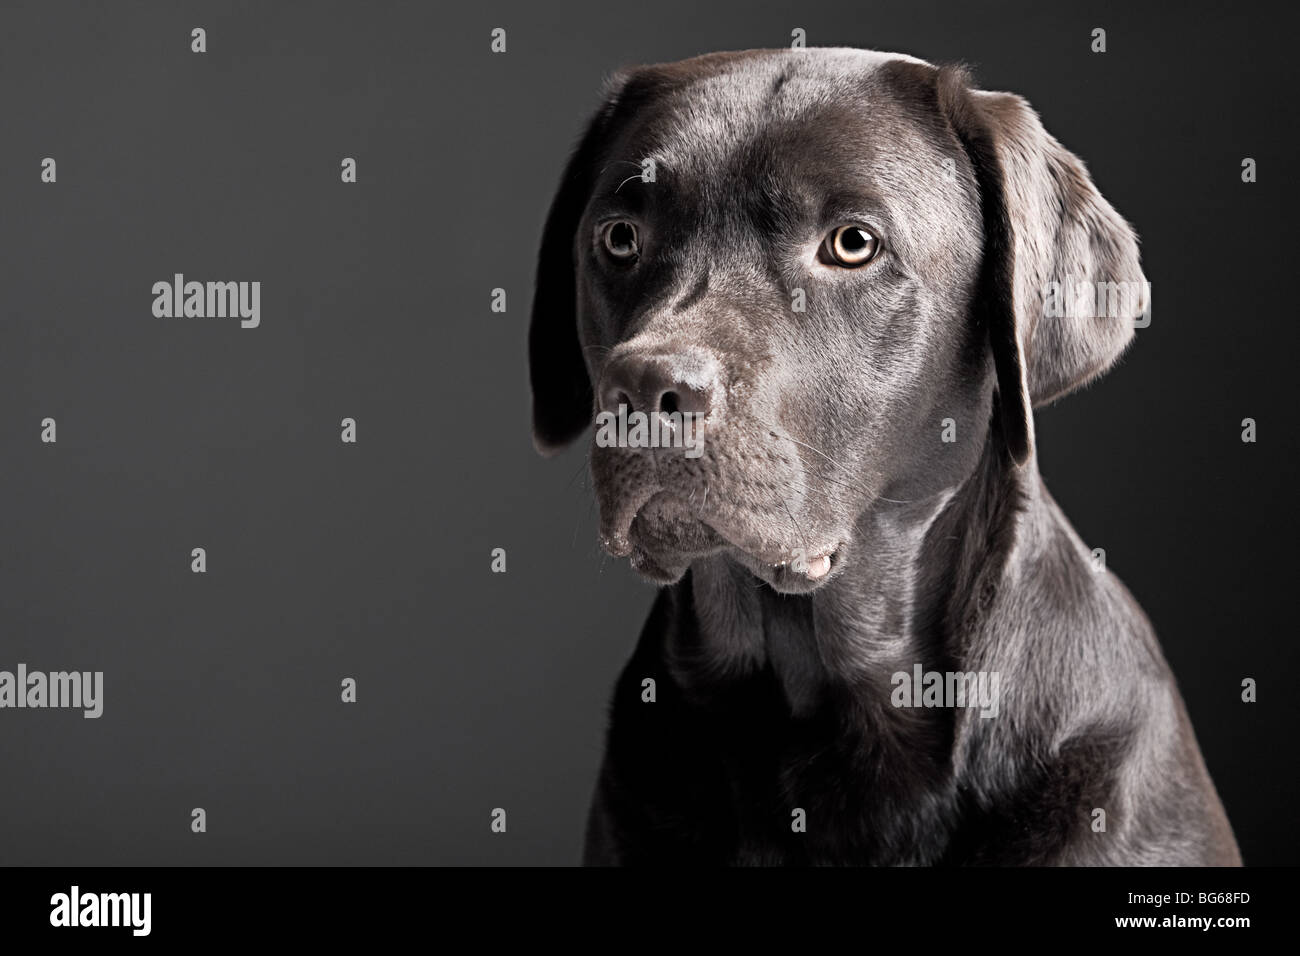 Chocolate Labrador Retriever Portrait against A Grey Background Stock Photo